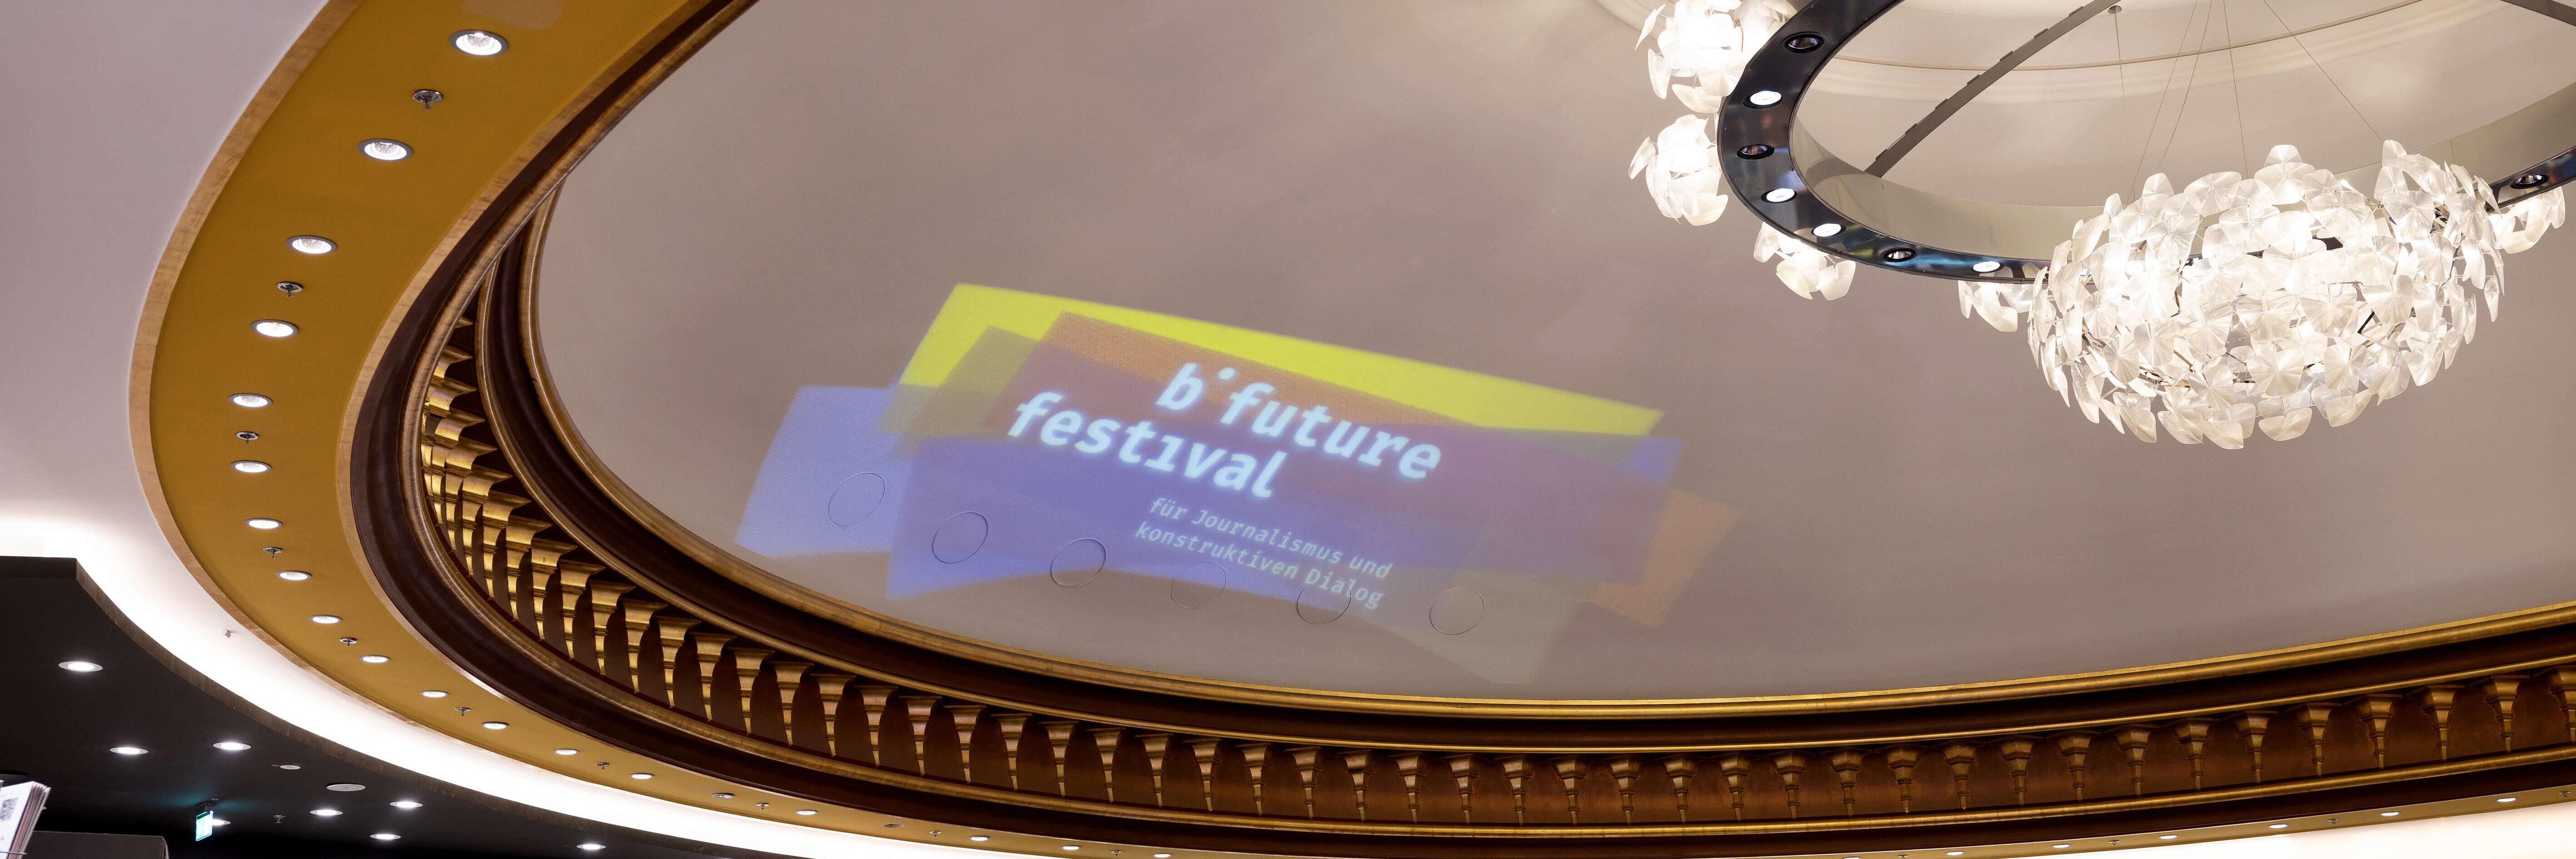 b° future festival logo in the dome of the Thalia bookstore.